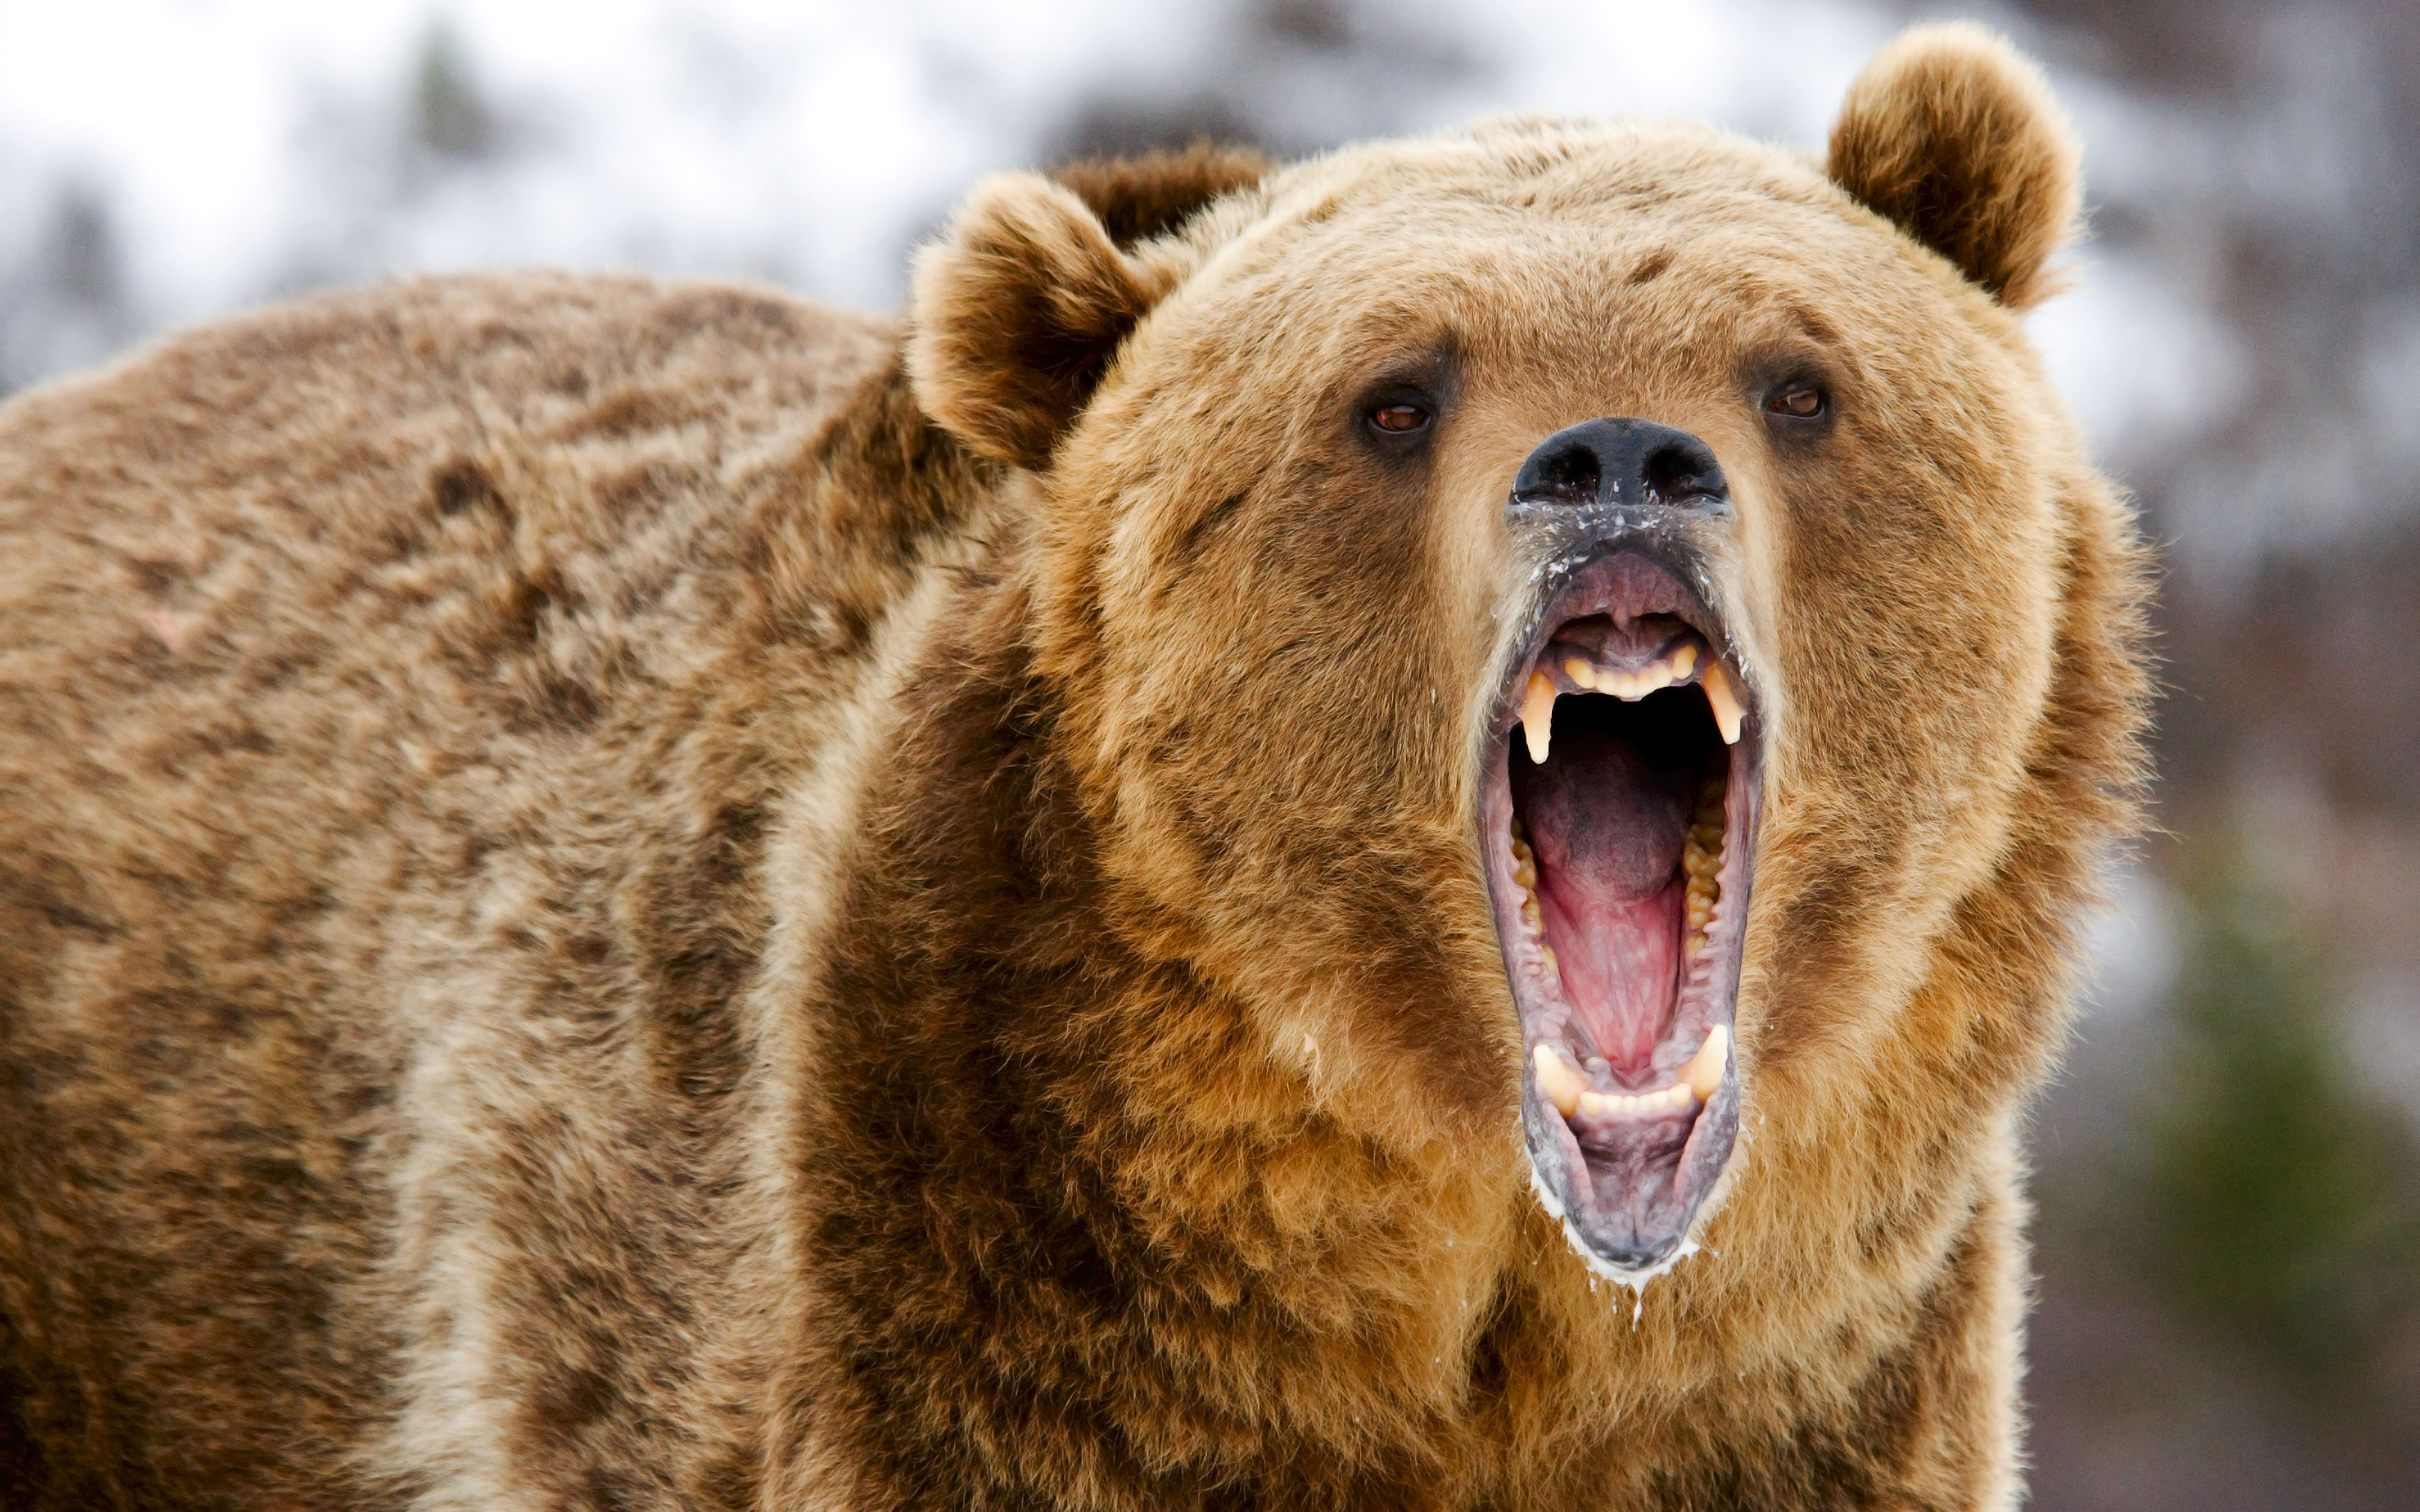 http://www.sokratis.it/wp-content/uploads/2015/01/Grizzly-Bear-Roar.jpg